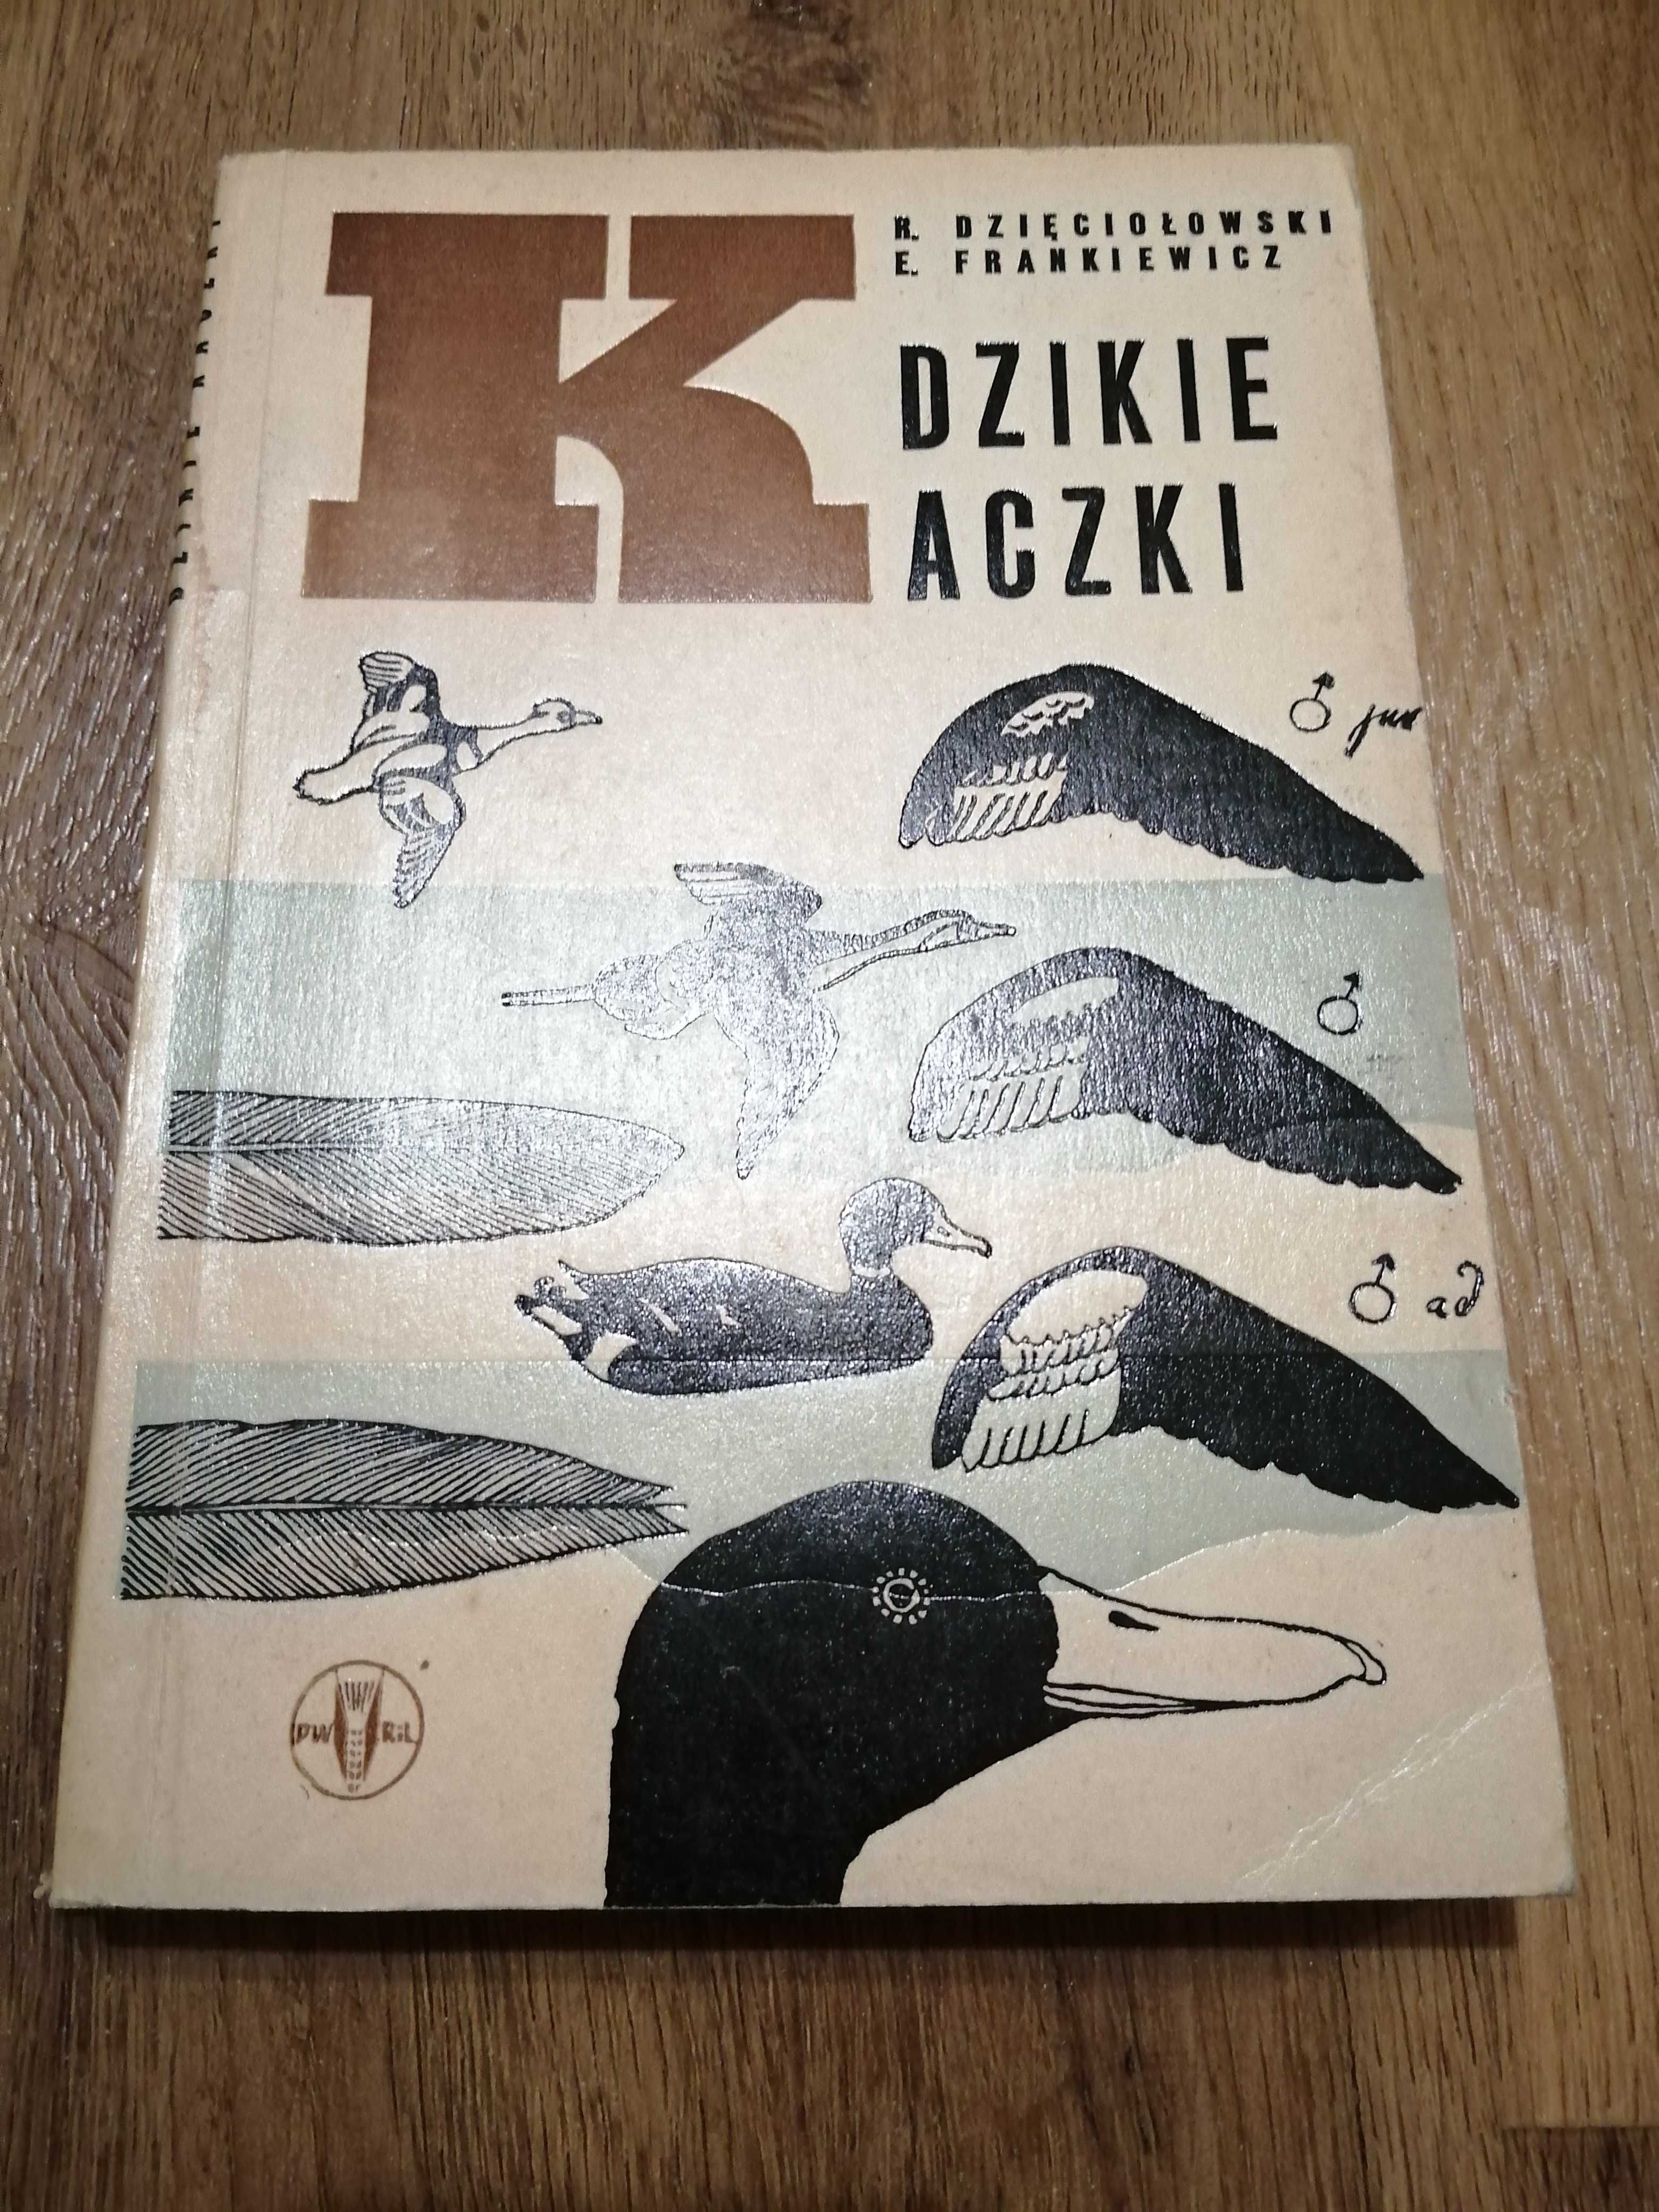 Dzięciołowski, Frankiewicz, Dzikie kaczki, 1966